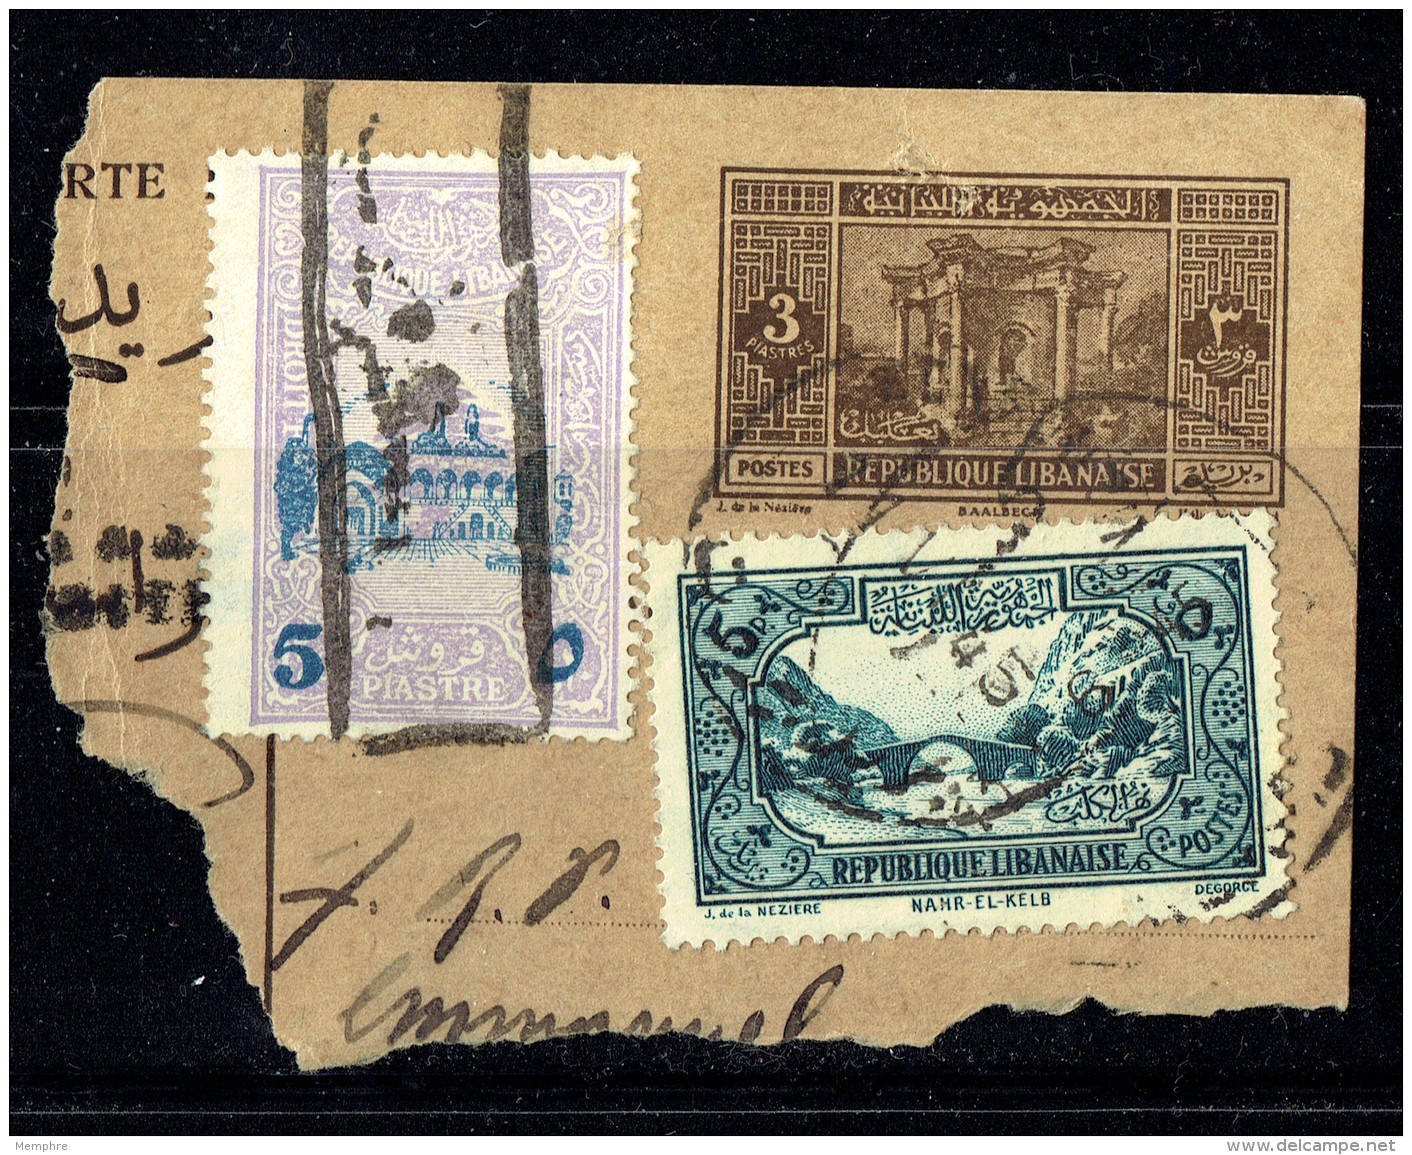 1945   Fragment De Carte Postale Avec Timbre Supplémentaire Et Timbre Fiscal Surchargé - Lettres & Documents